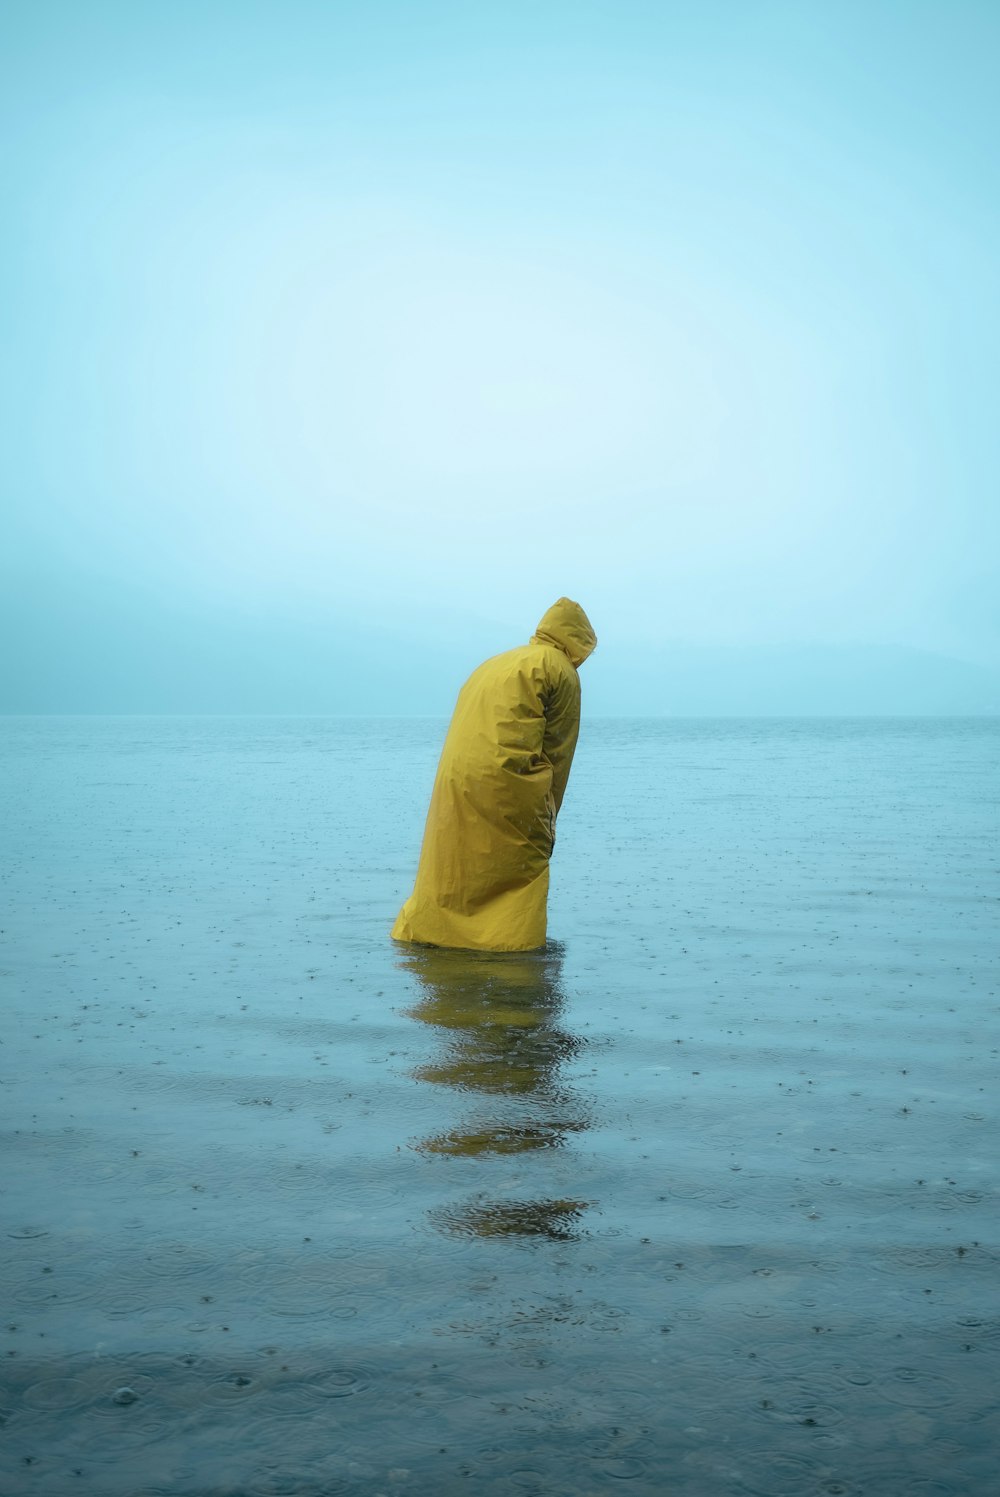 persona in felpa con cappuccio gialla in piedi sulla riva del mare durante il giorno